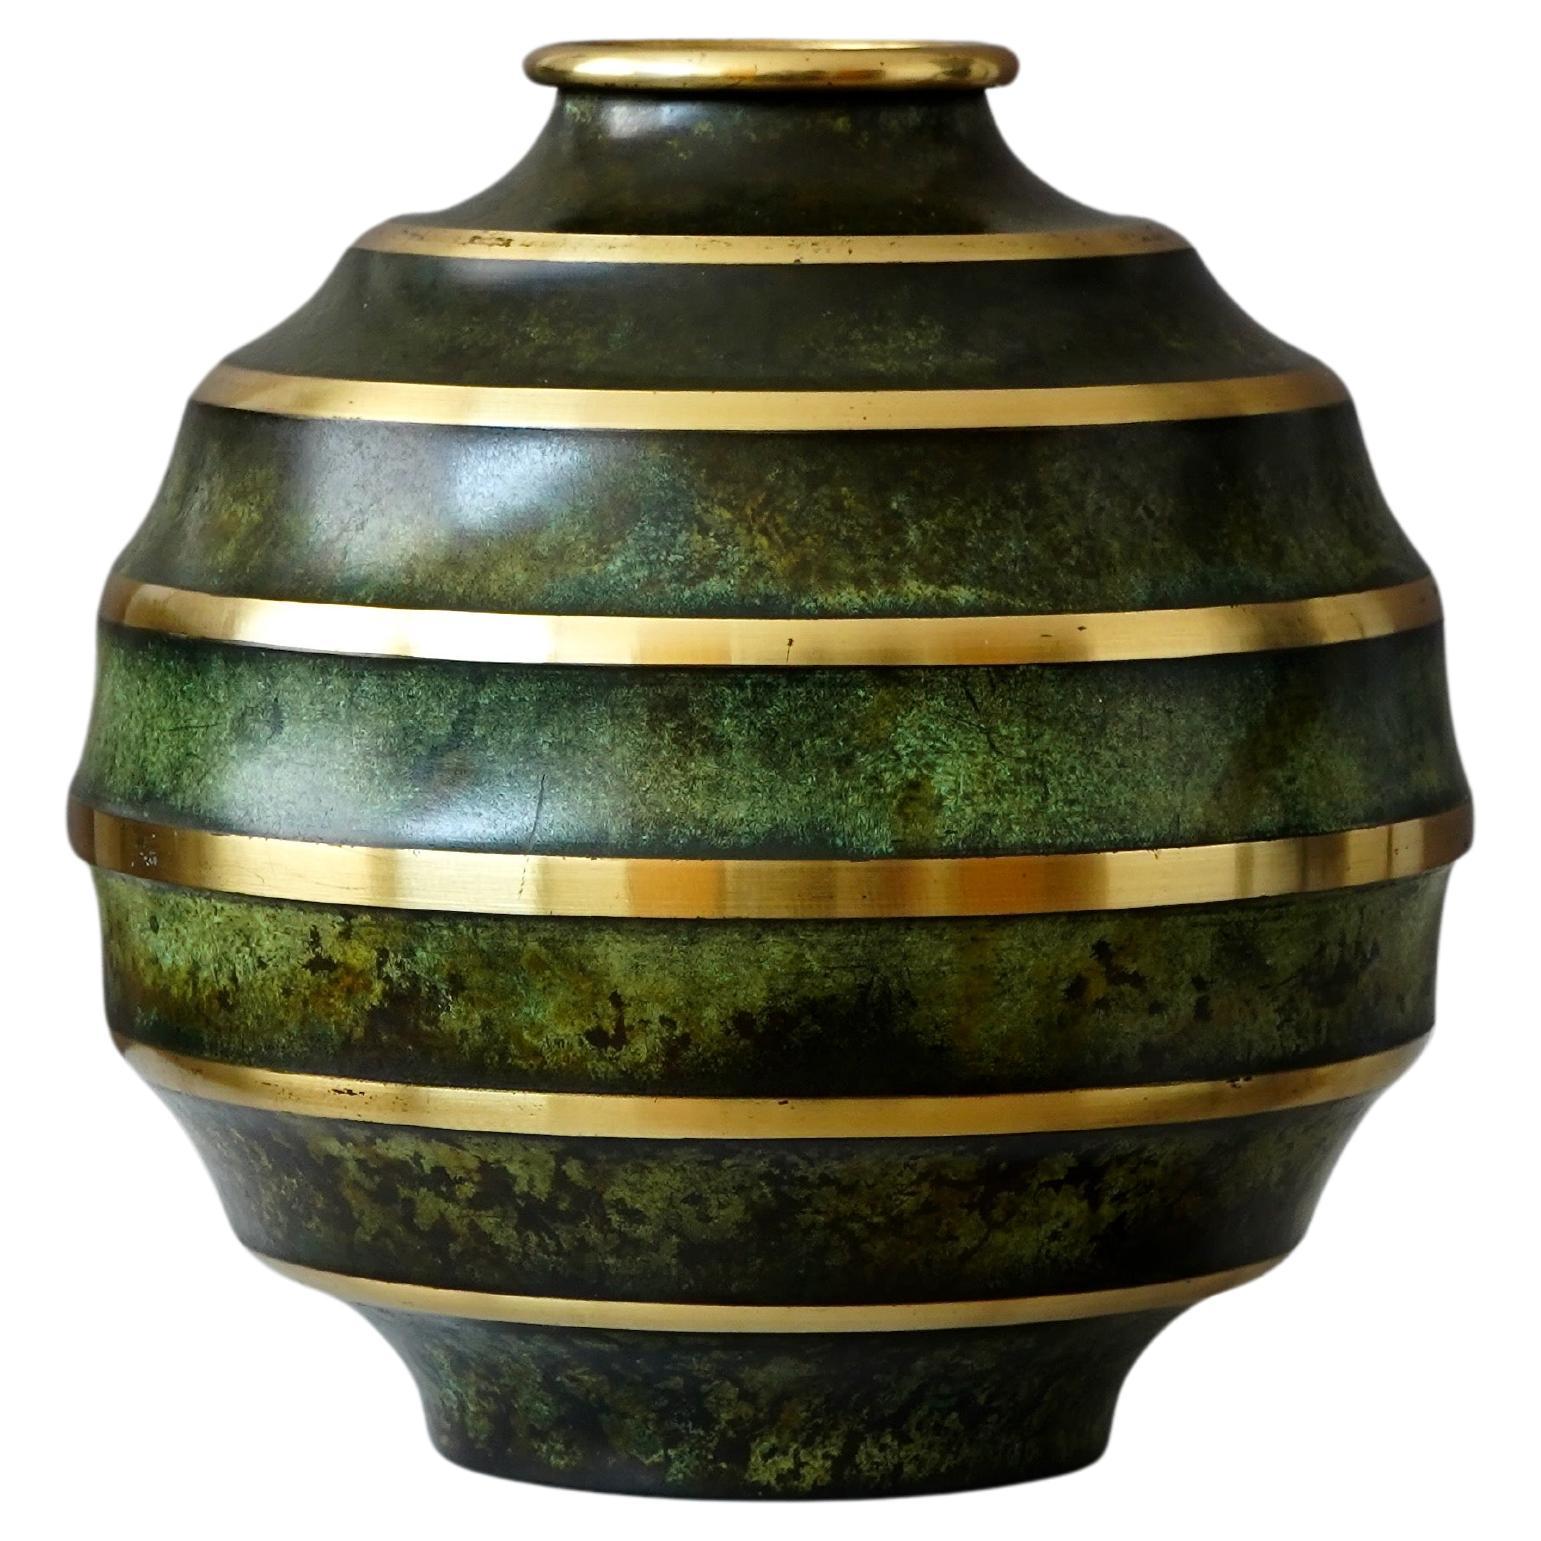 Bronze Art Deco Vase by SVM Handarbete, Sweden, 1930s